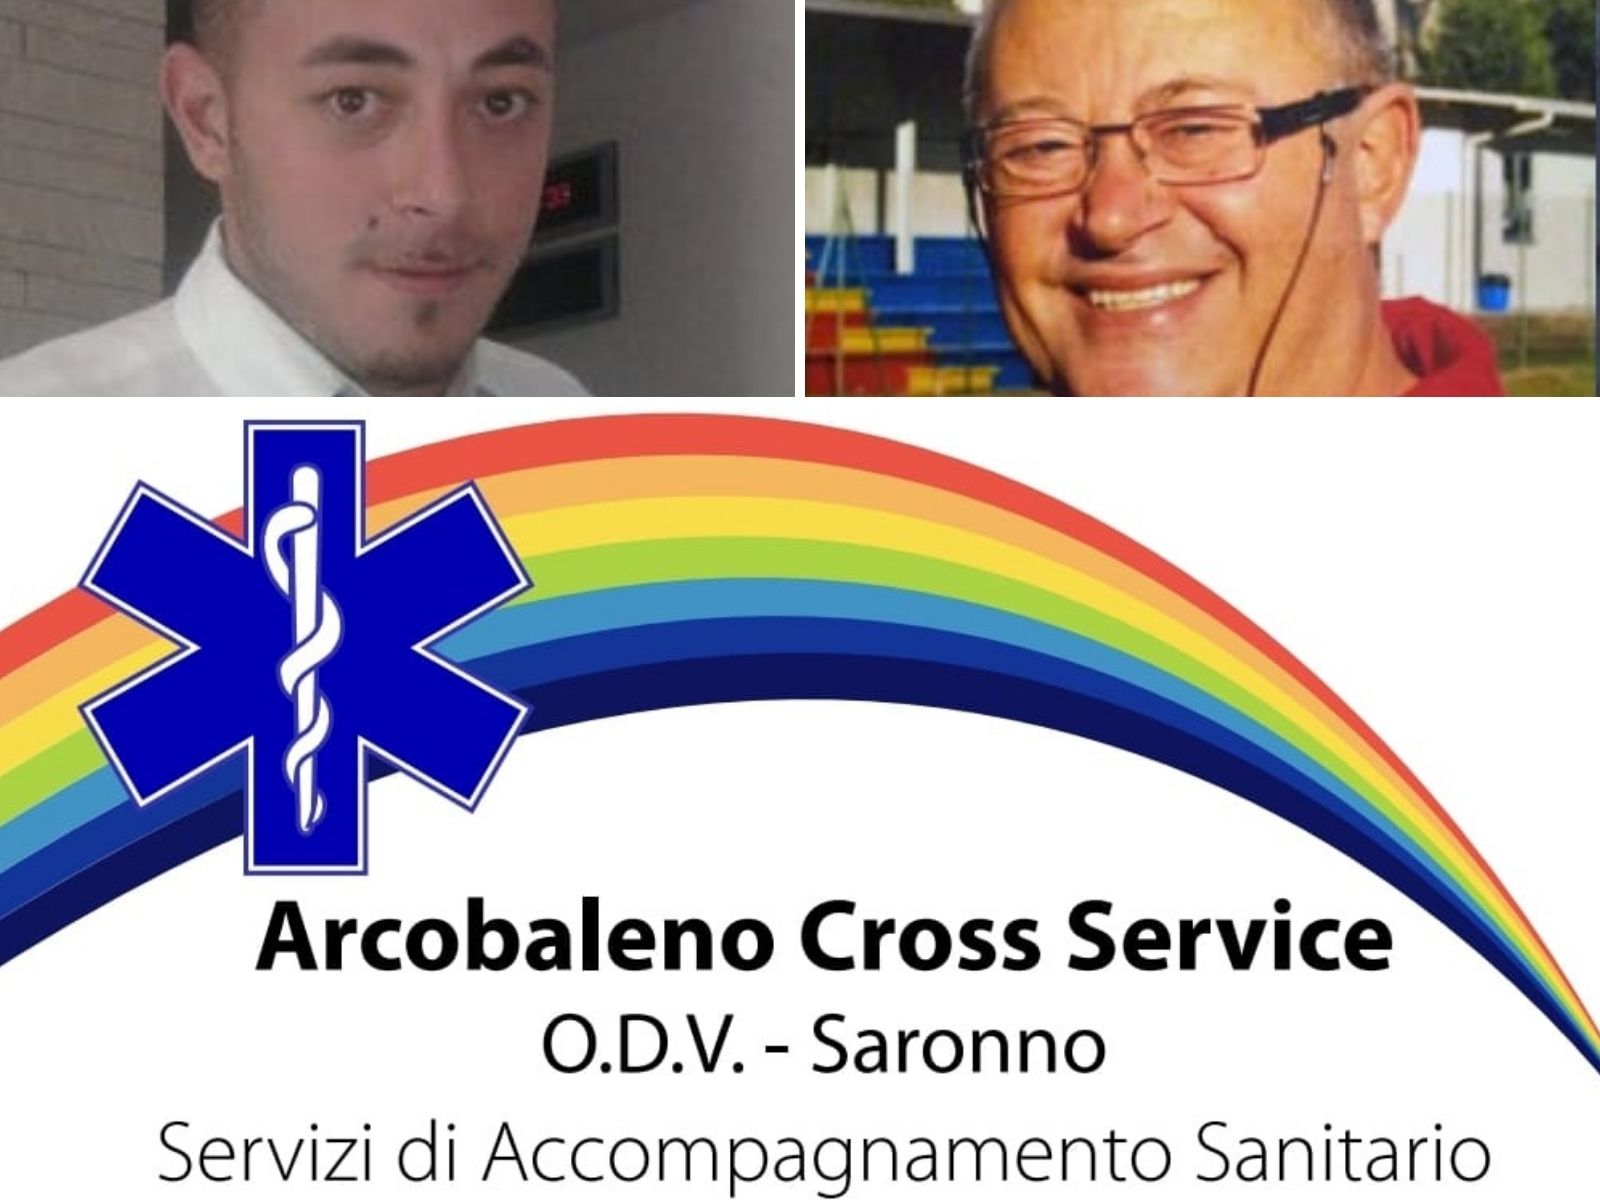 Nasce oggi Arcobaleno Cross Service in memoria del saronnese Aldo Gallo anima del Matteotti